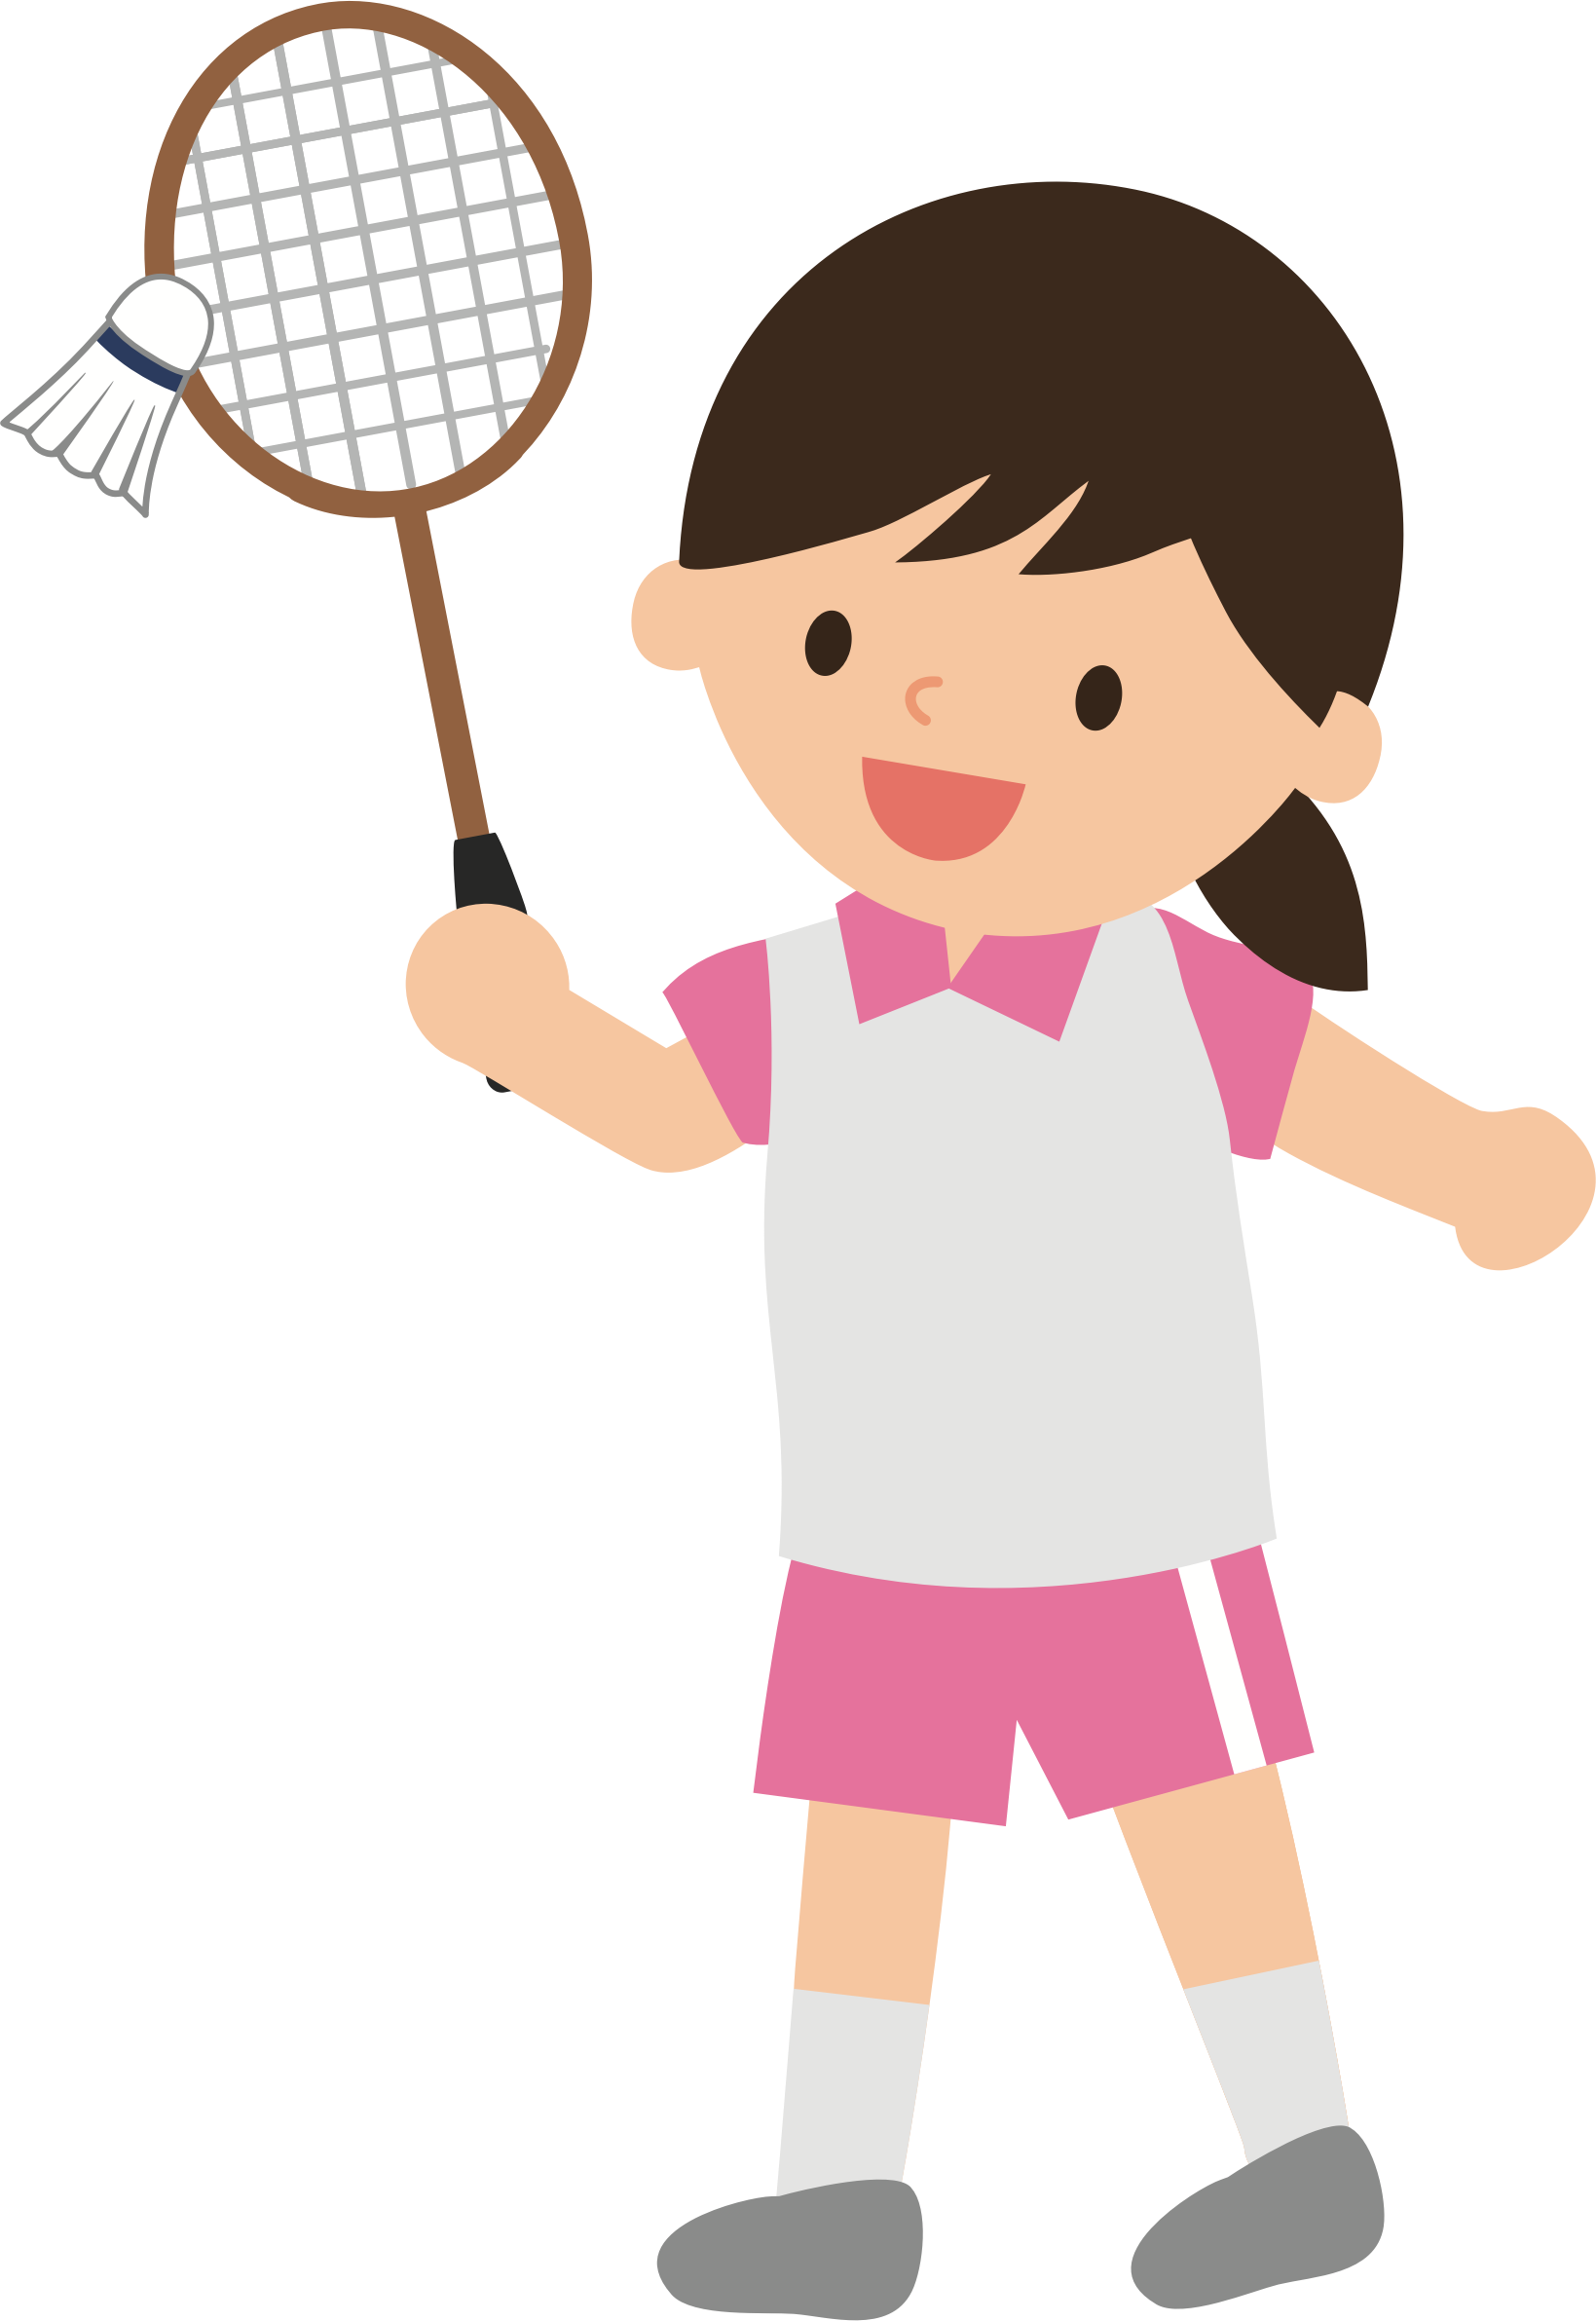 A Cartoon Of A Girl Holding A Badminton Racket